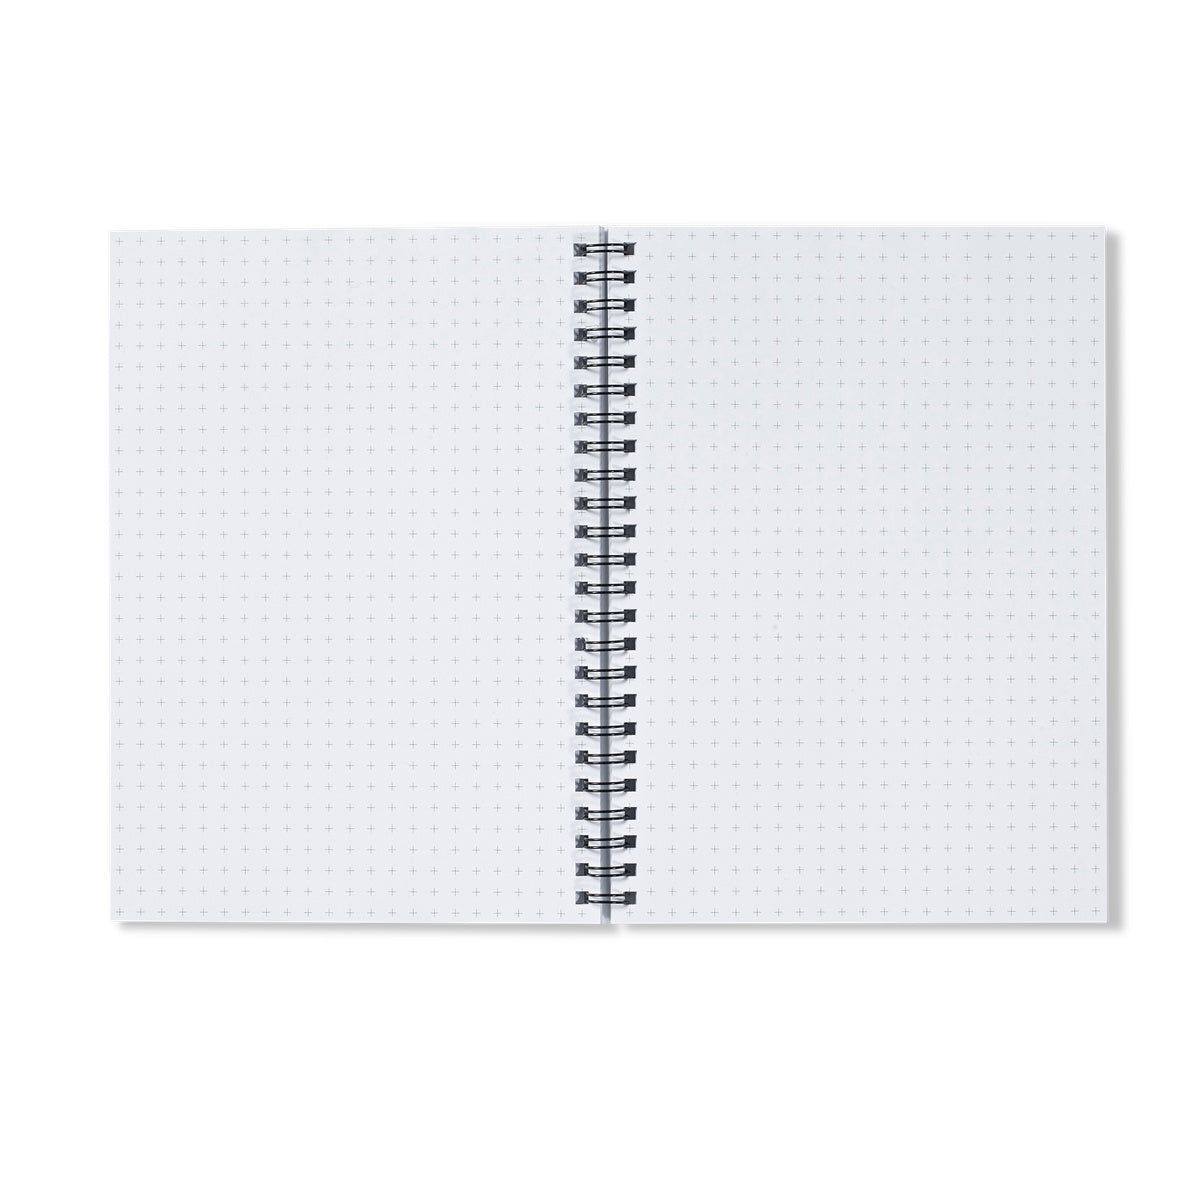 Believe It - A4 Spiral Notebook  Notebook